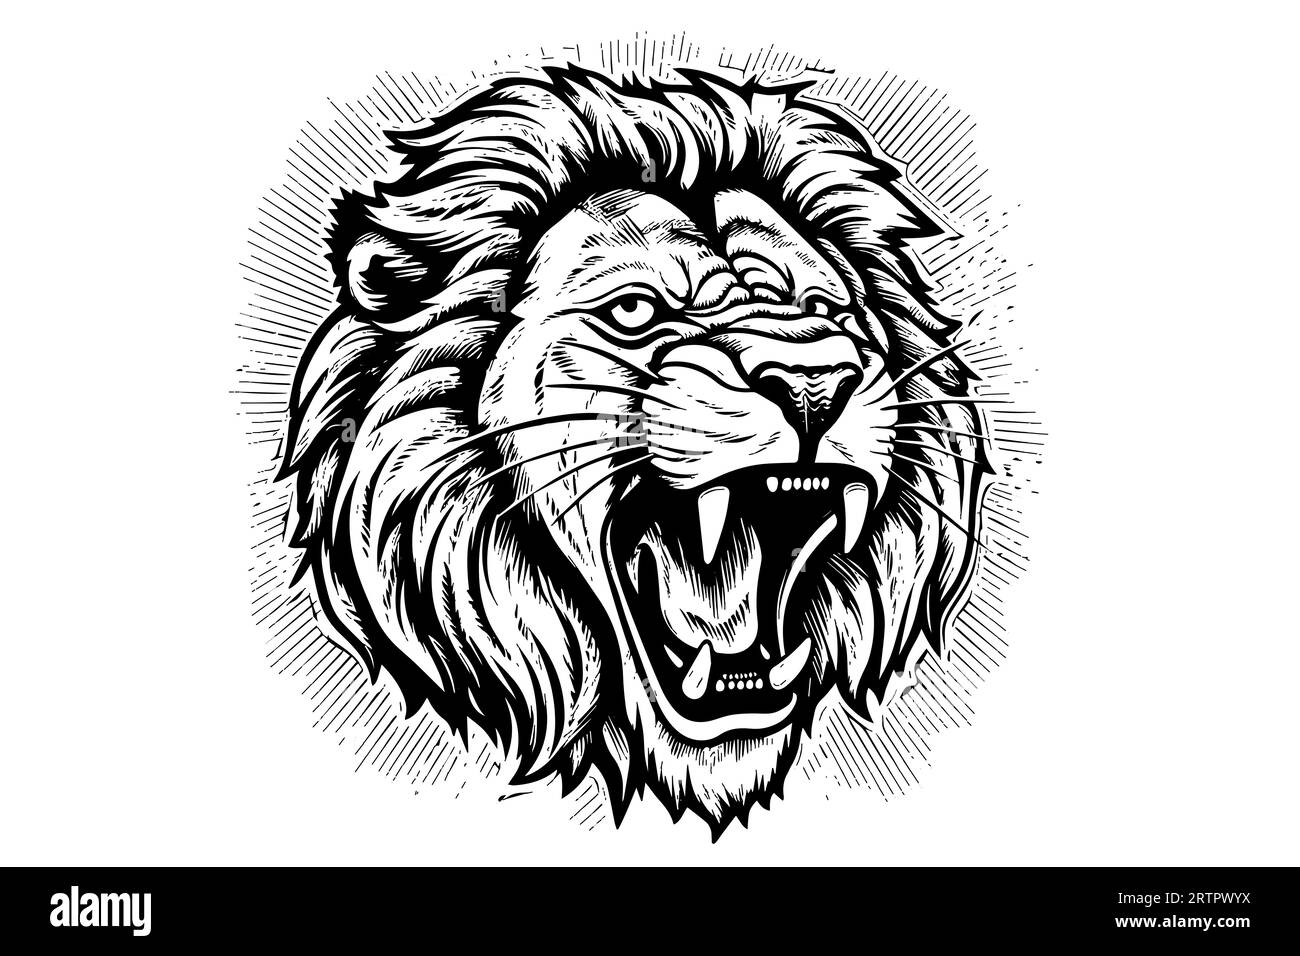 Dessin de portrait de tête de growl de lion dessin à la main illustration vectorielle de style gravure. Illustration de Vecteur